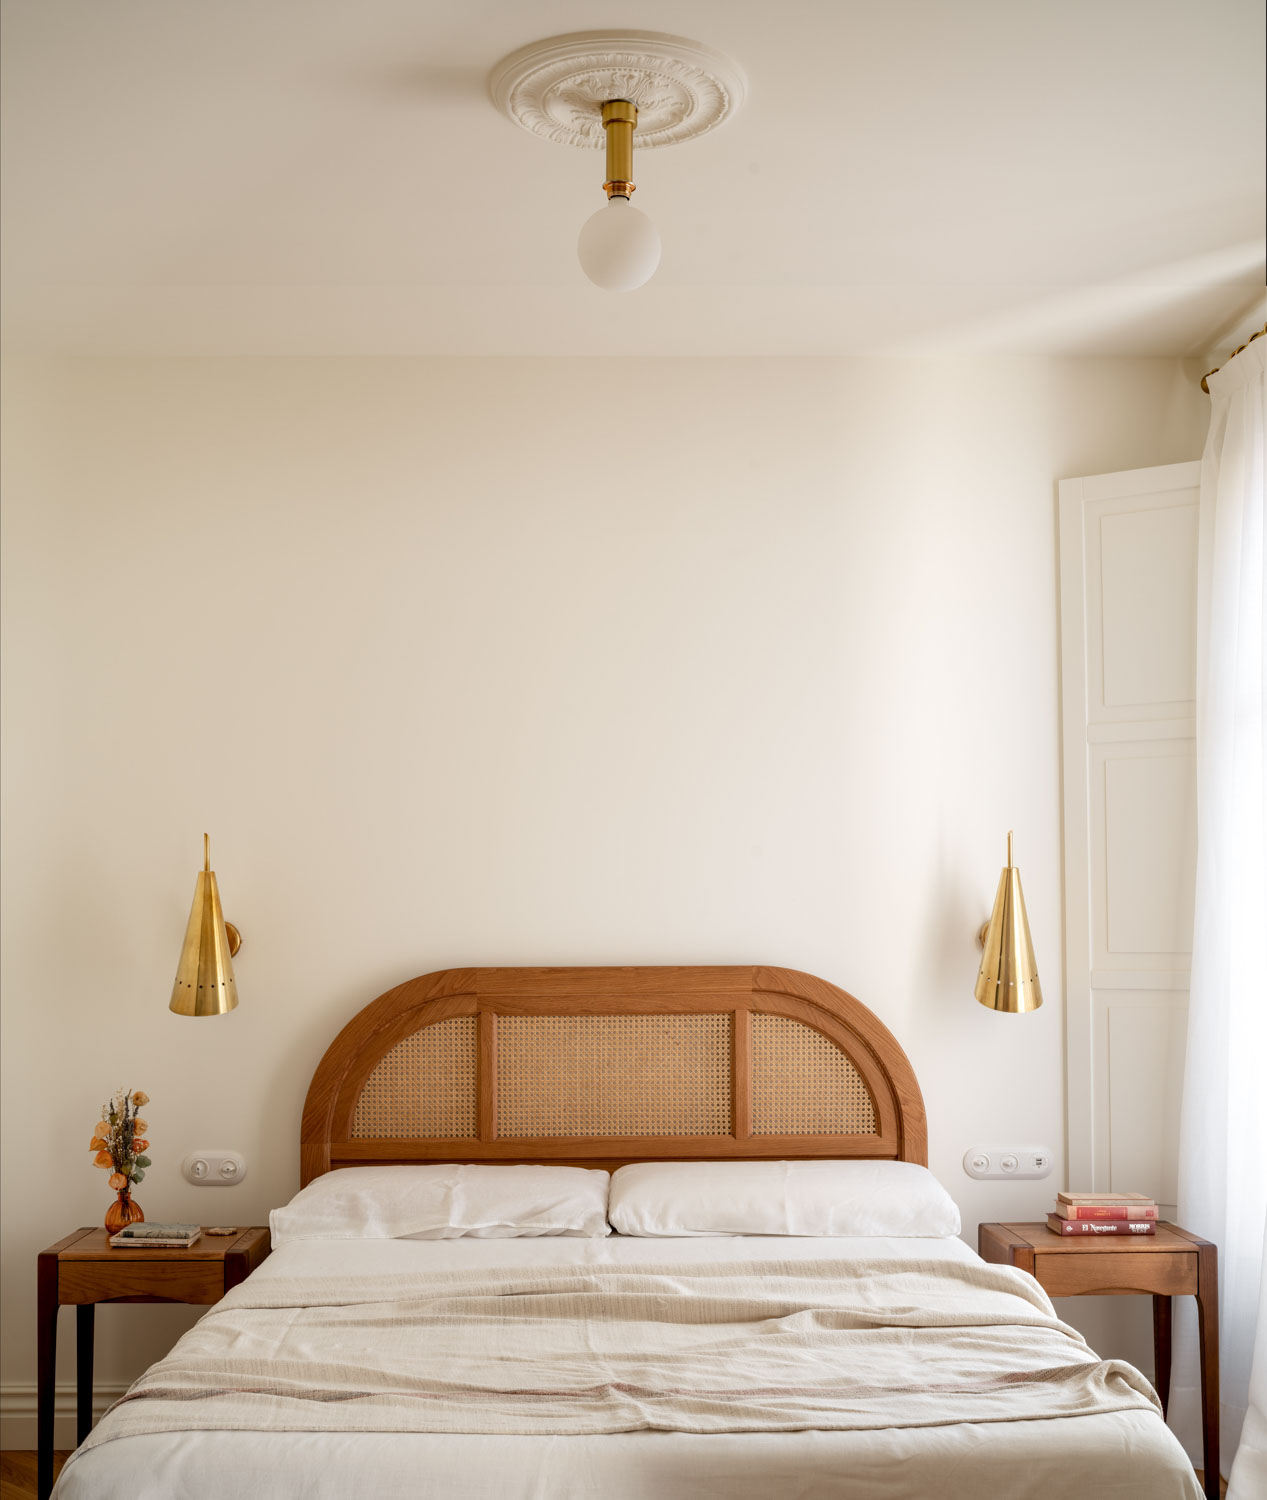 Imagen del dormitorio - Fotografía de arquitectura por Biderbost Photo